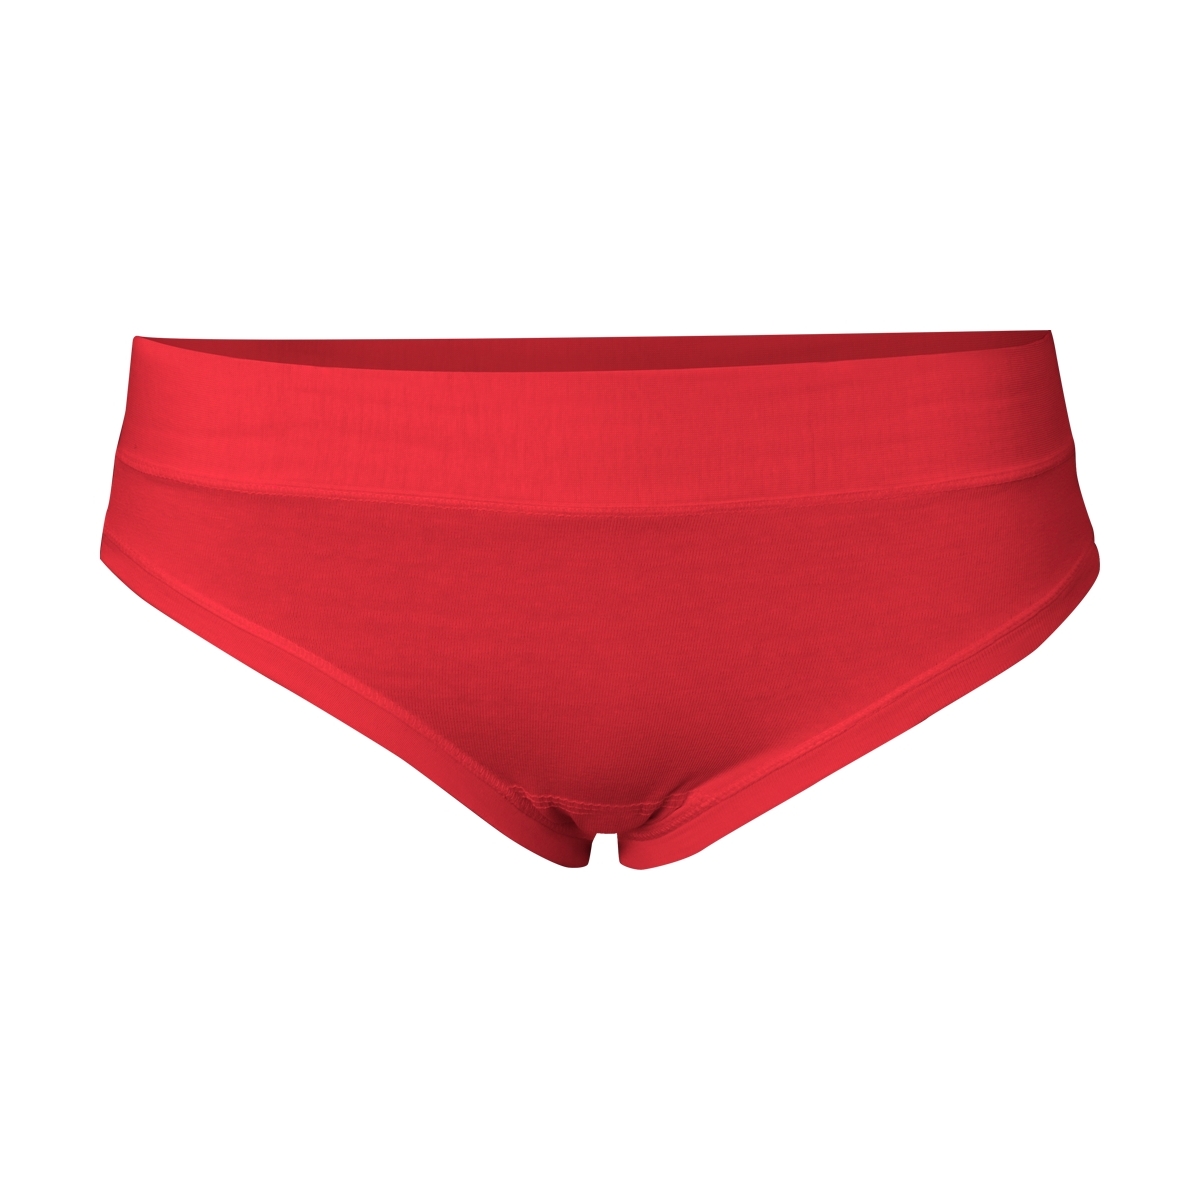 Kalhotky dámské Alex Fox - červené, XL